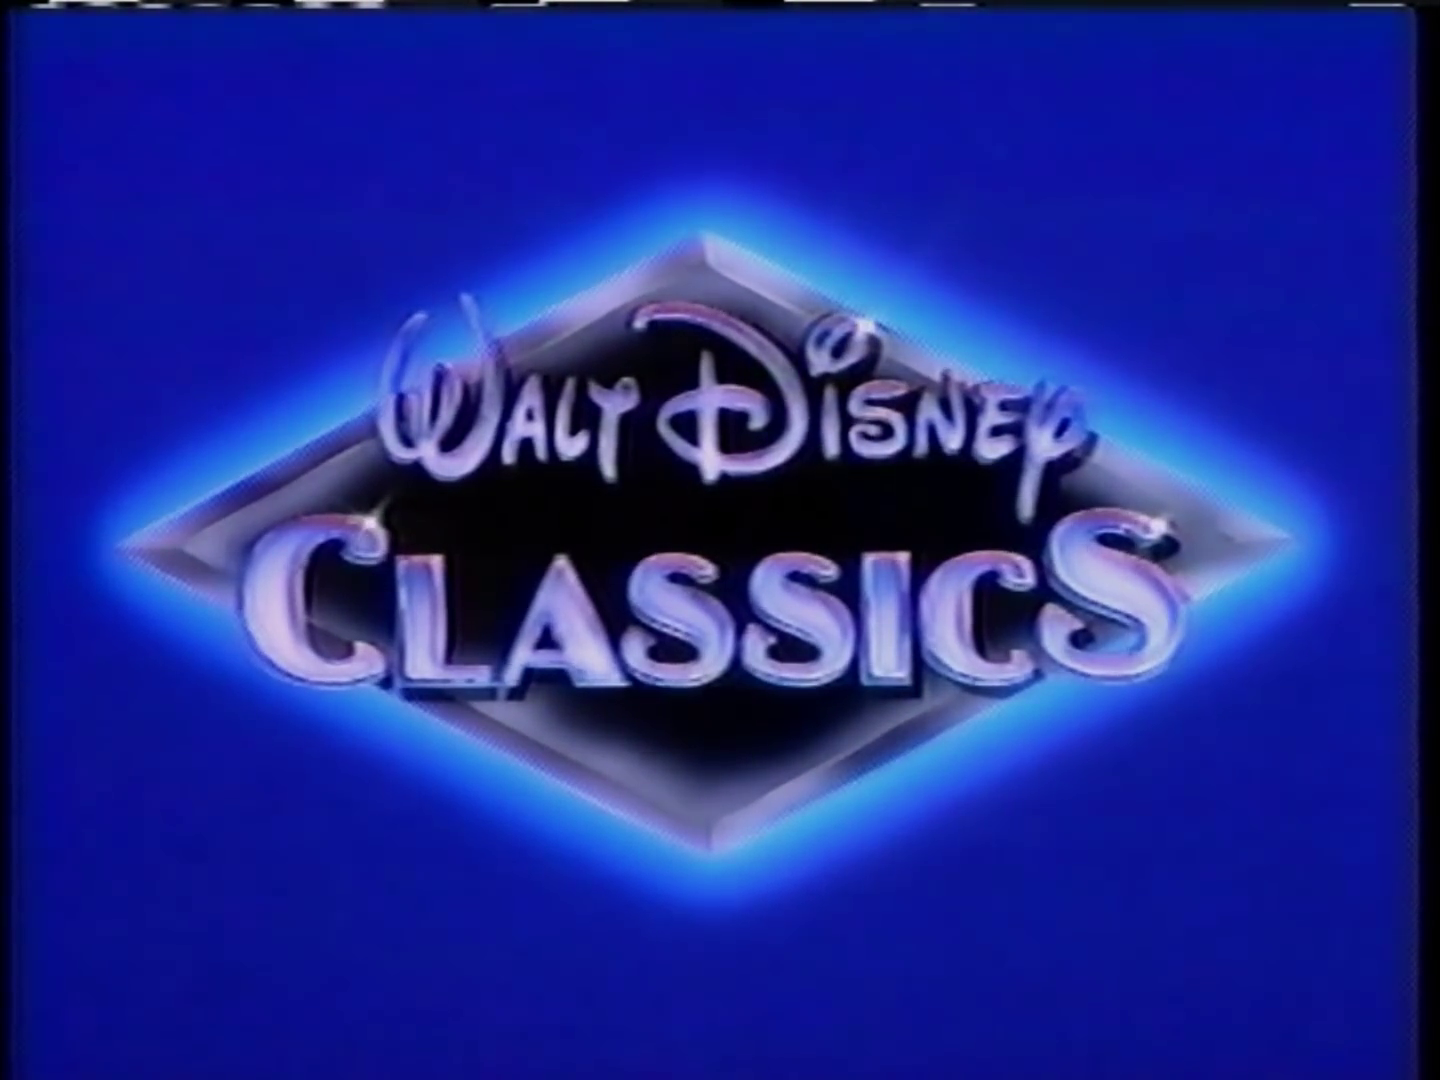 Print Logos Walt Disney Classics Closing Logos | Images and Photos finder